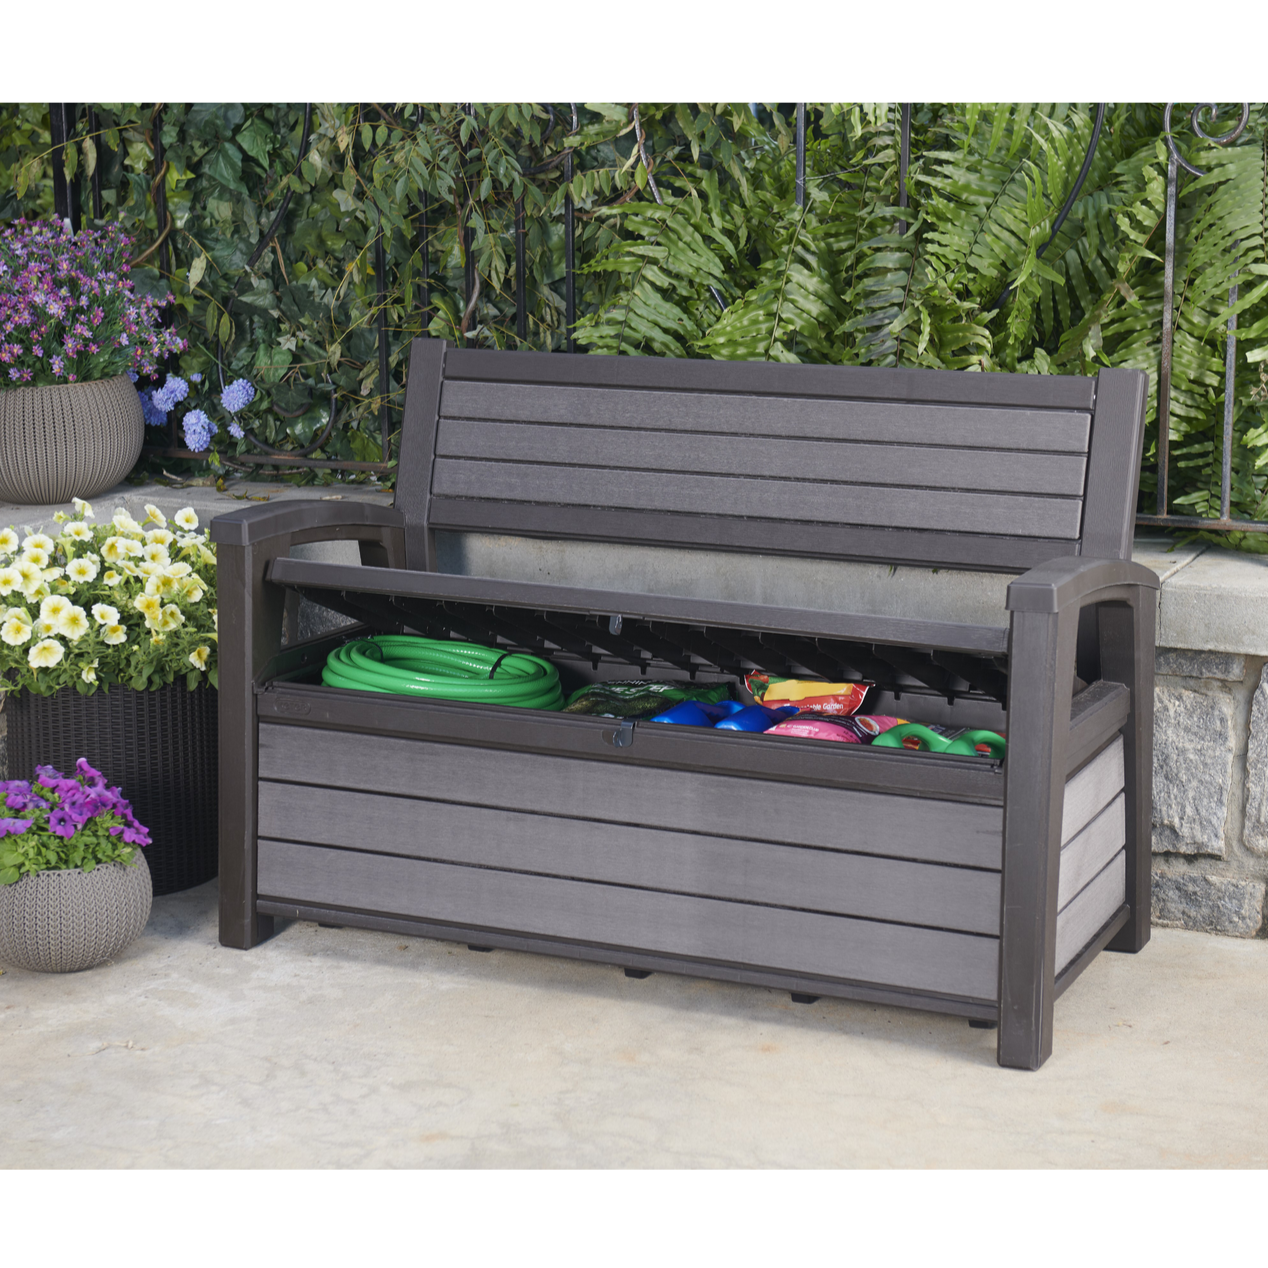 Keter Hudson Storage Bench in Grey Outdoor Storage Keter   